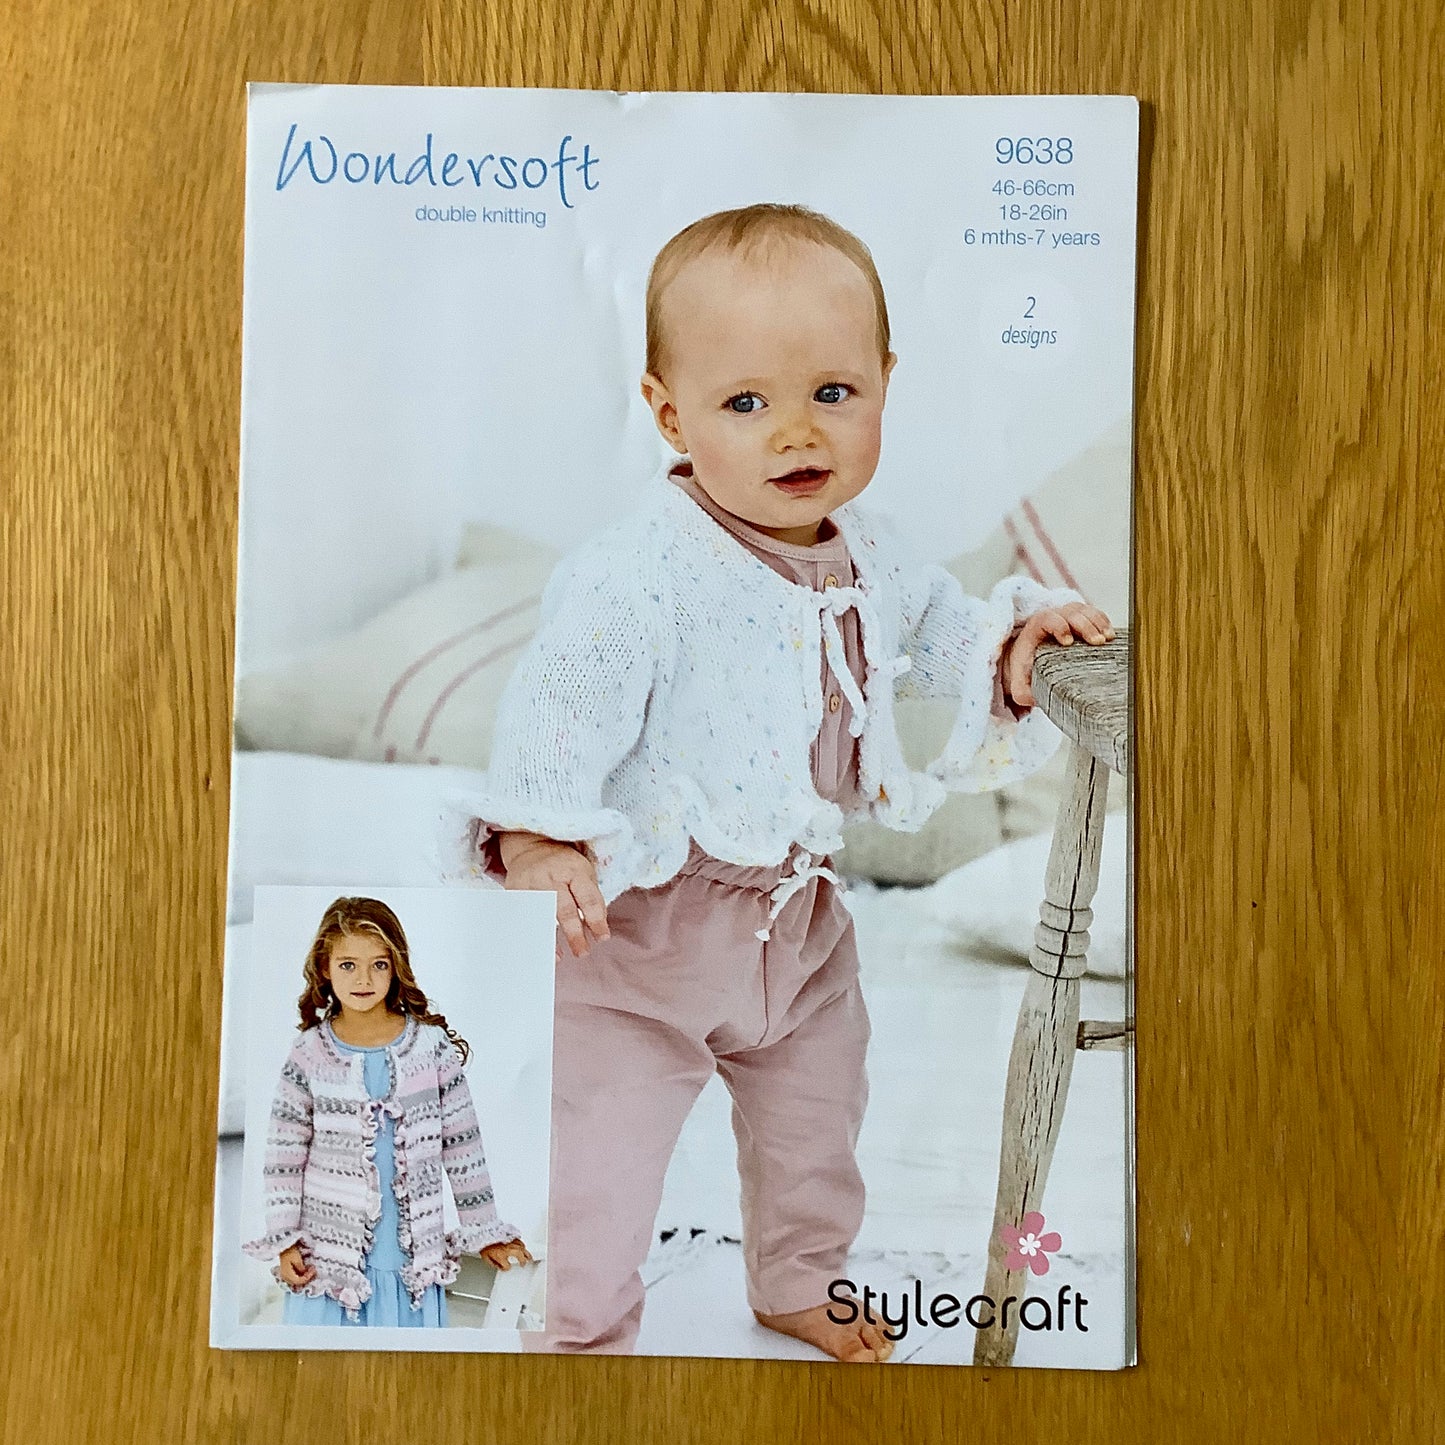 Stylecraft Wondersoft Double Knitting DK Pattern 6 Months - 7 Years 9638